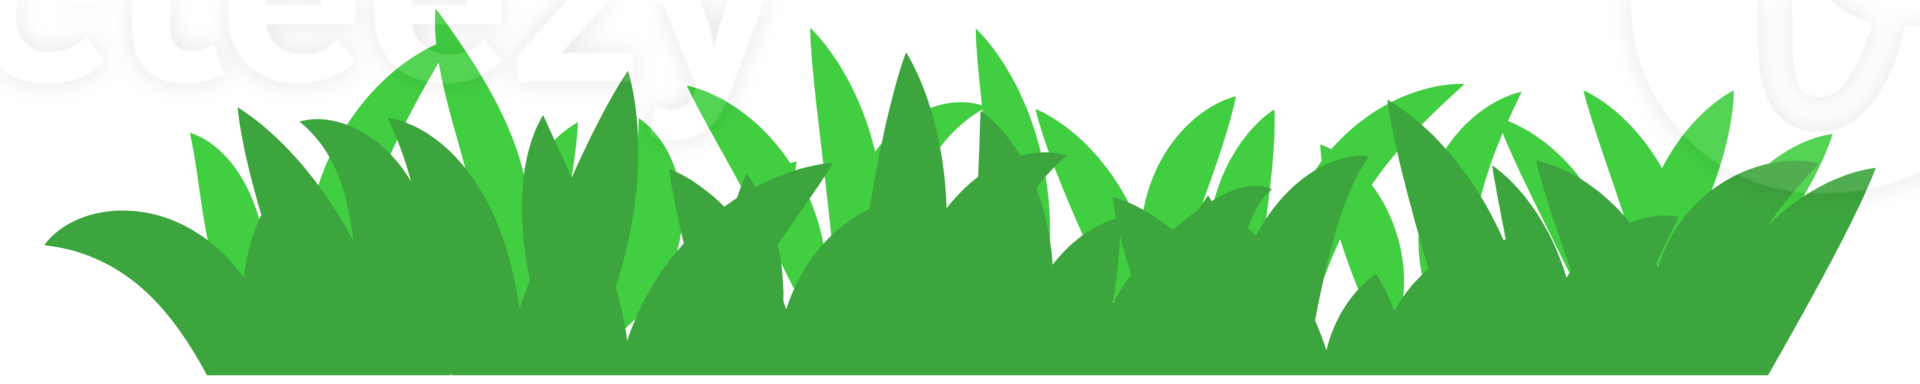 illustrazione di verde erba png